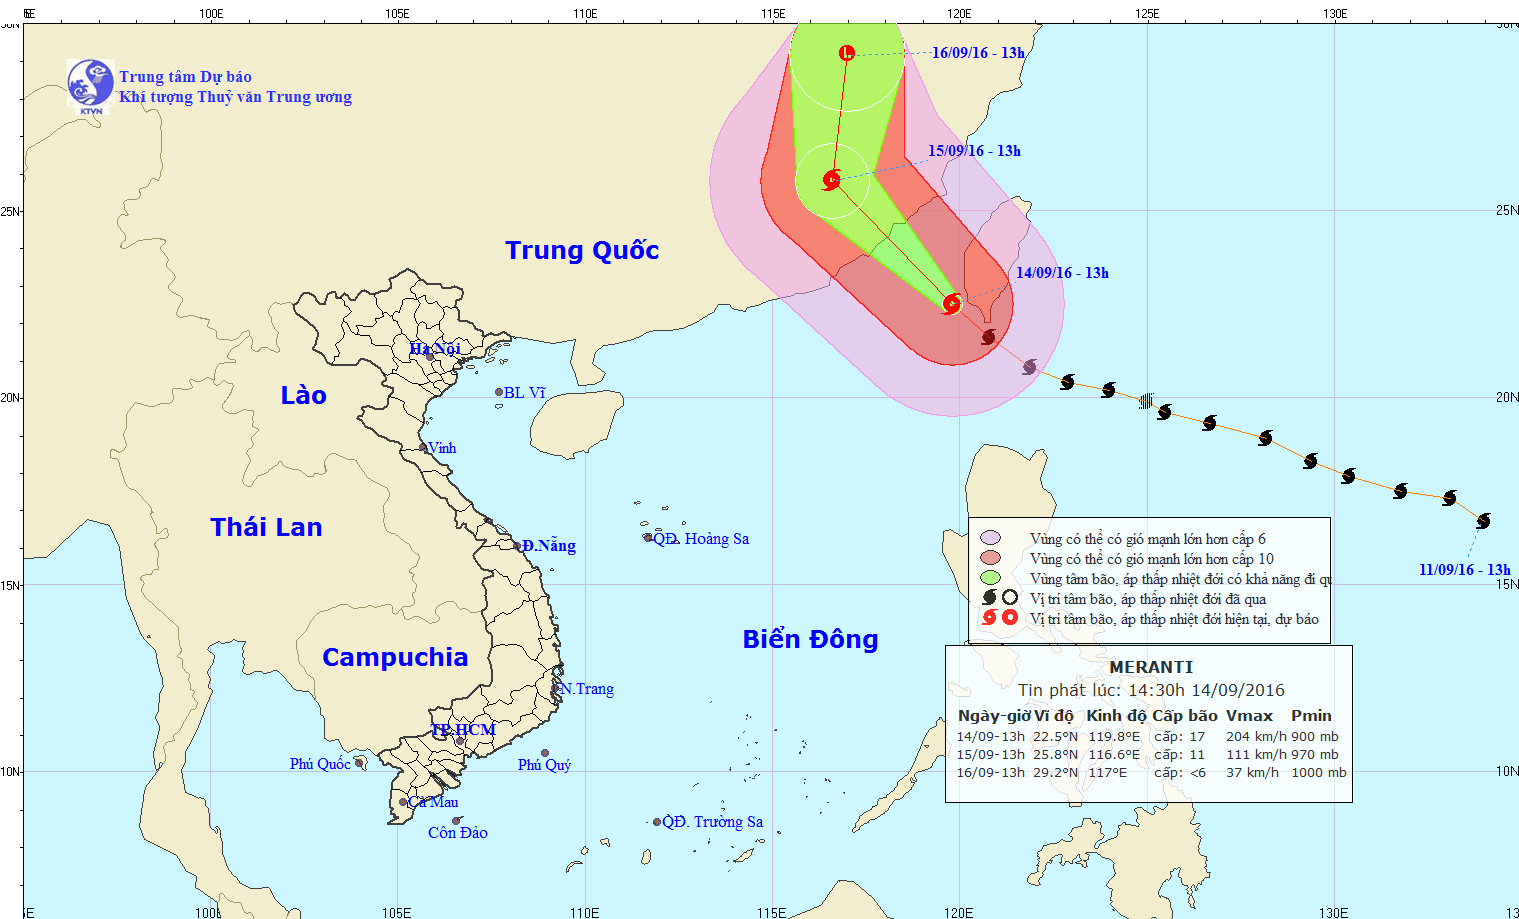 Siêu bão Meranti đi vào khu vực Đông Bắc Biển Đông, trở thành cơn bão số 5.